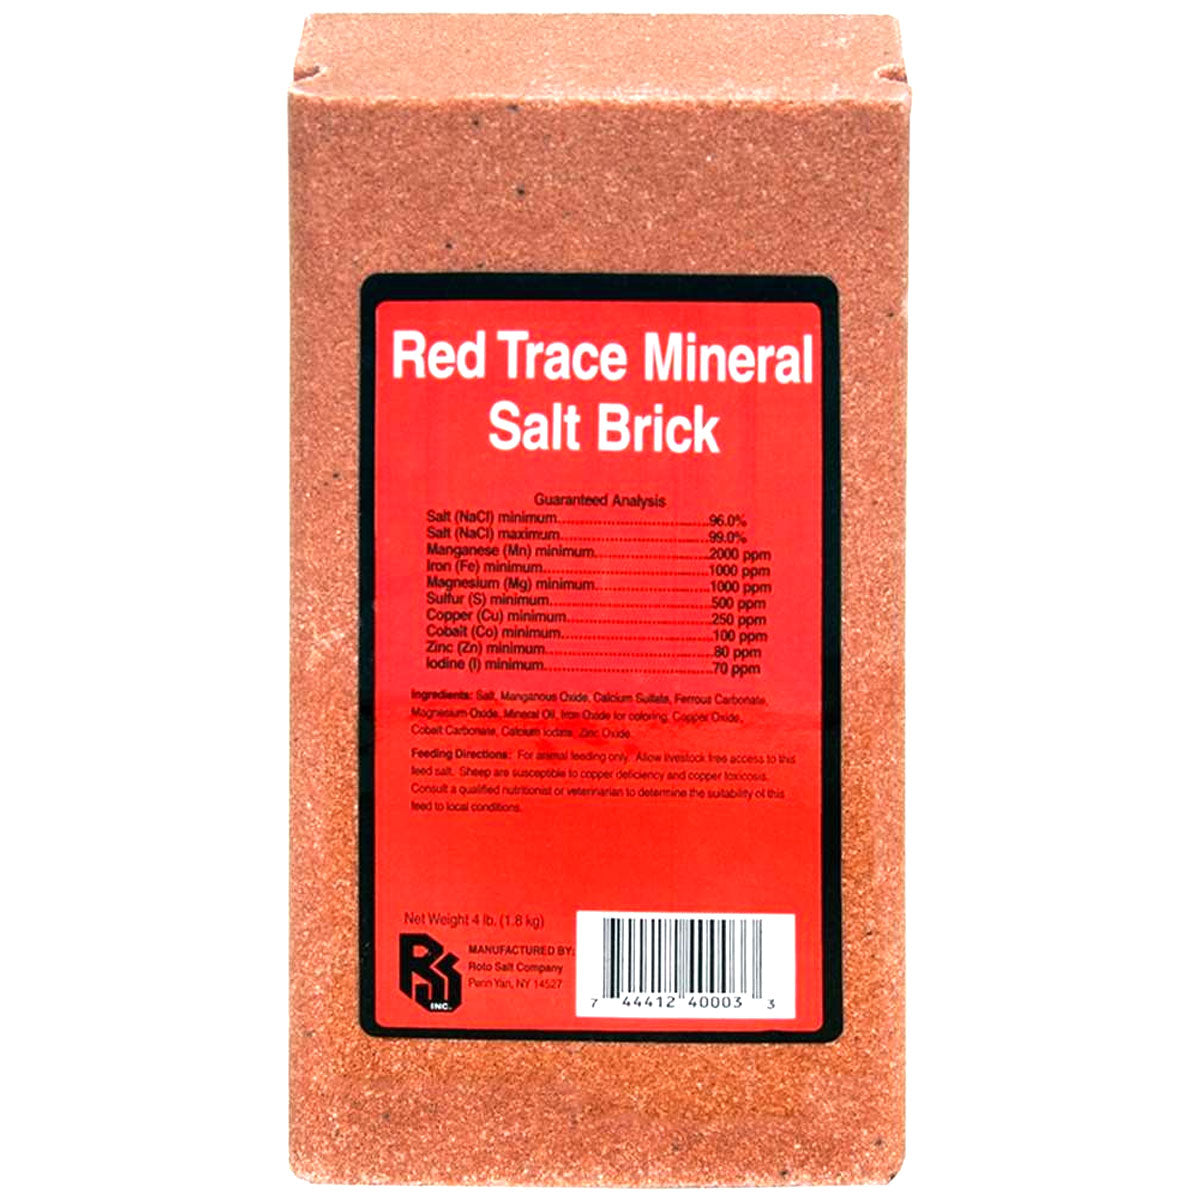 Red Trace Mineral Salt Brick 4 lb